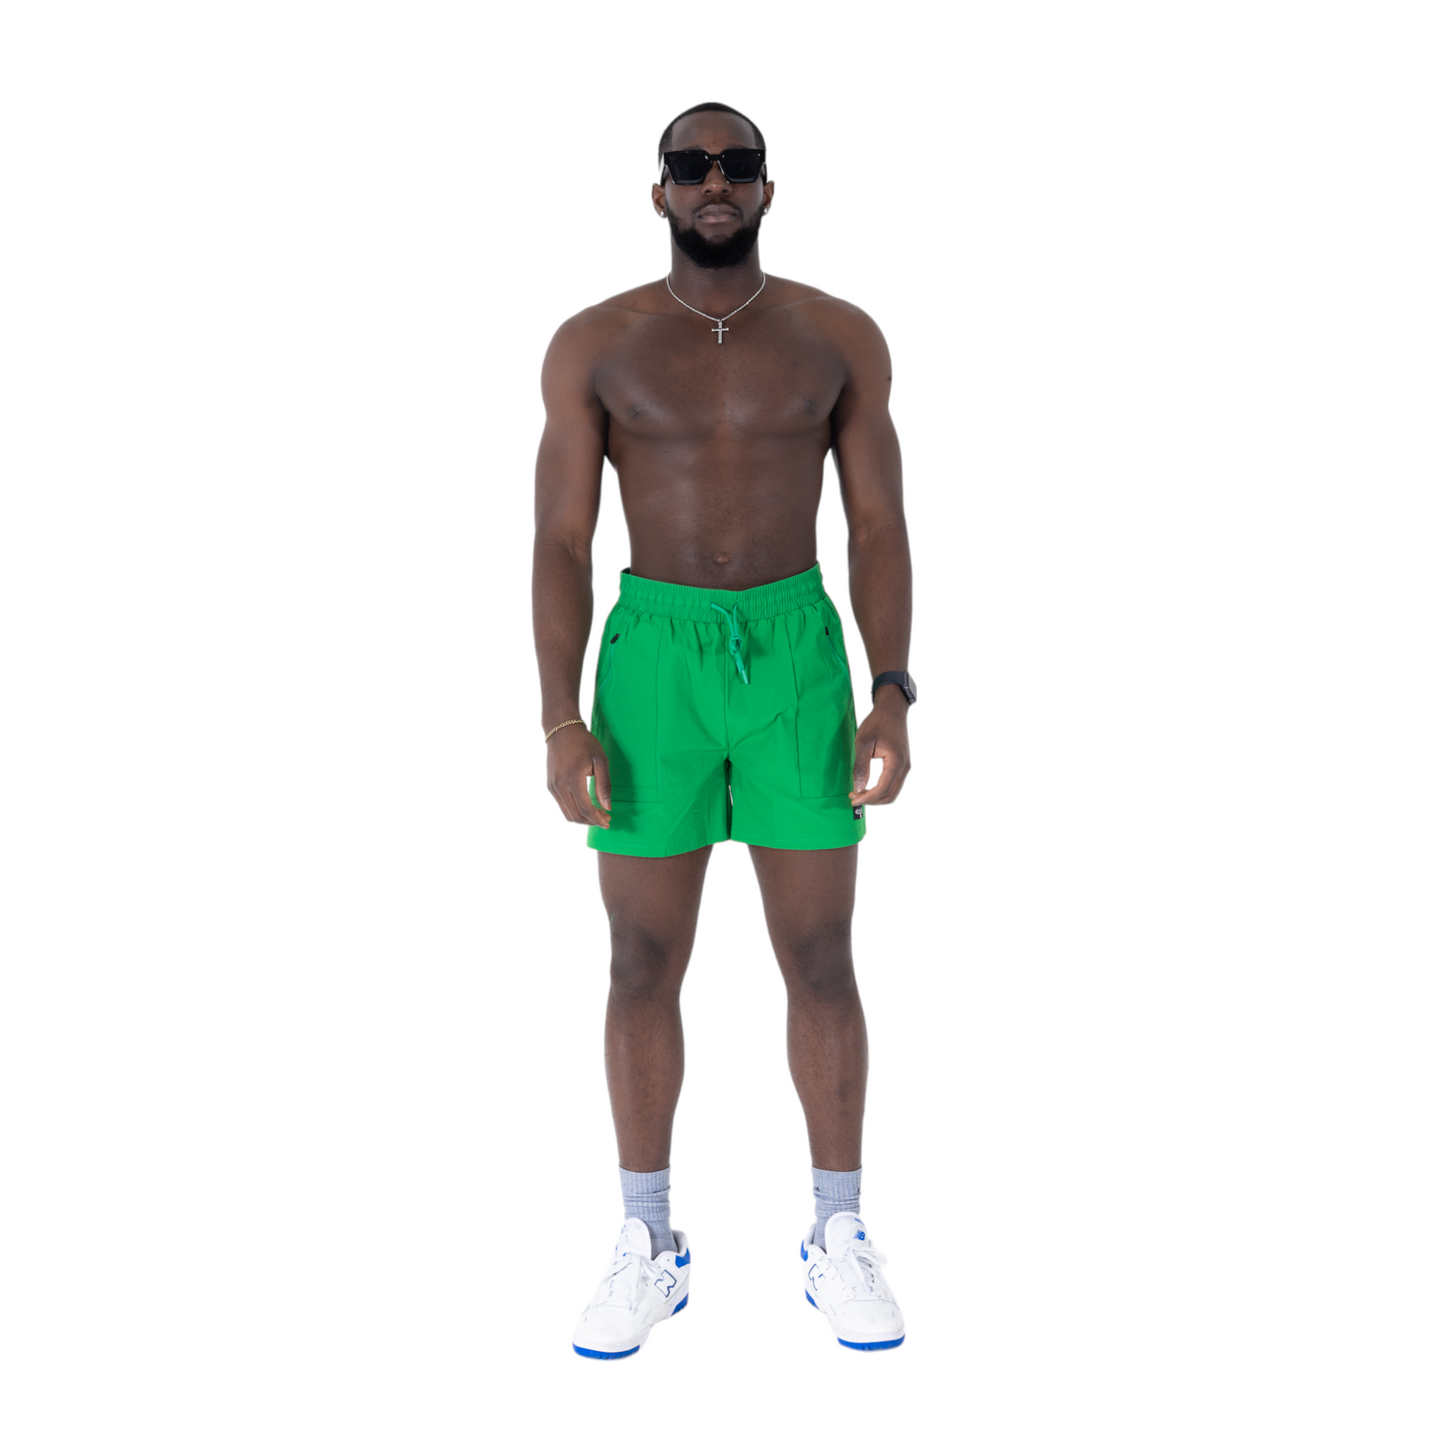 Surge Shorts : KELLY GREEN